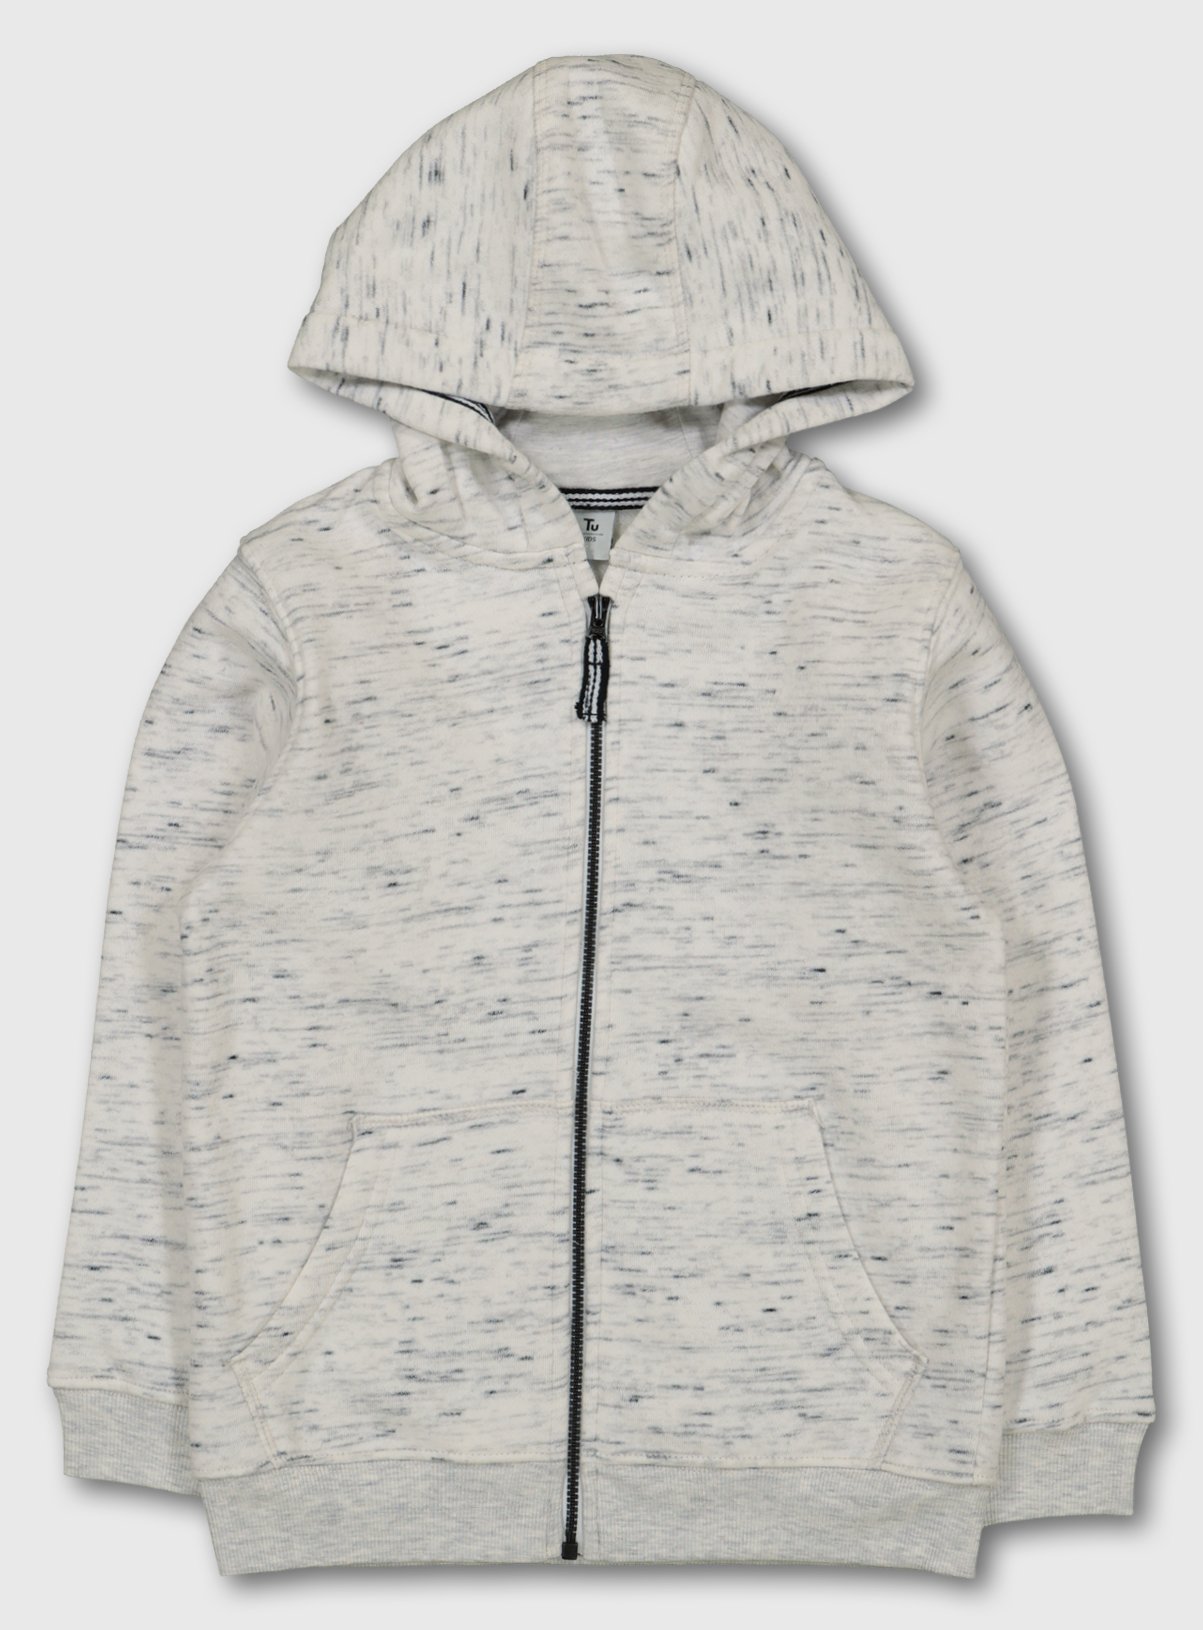 pale grey hoodie